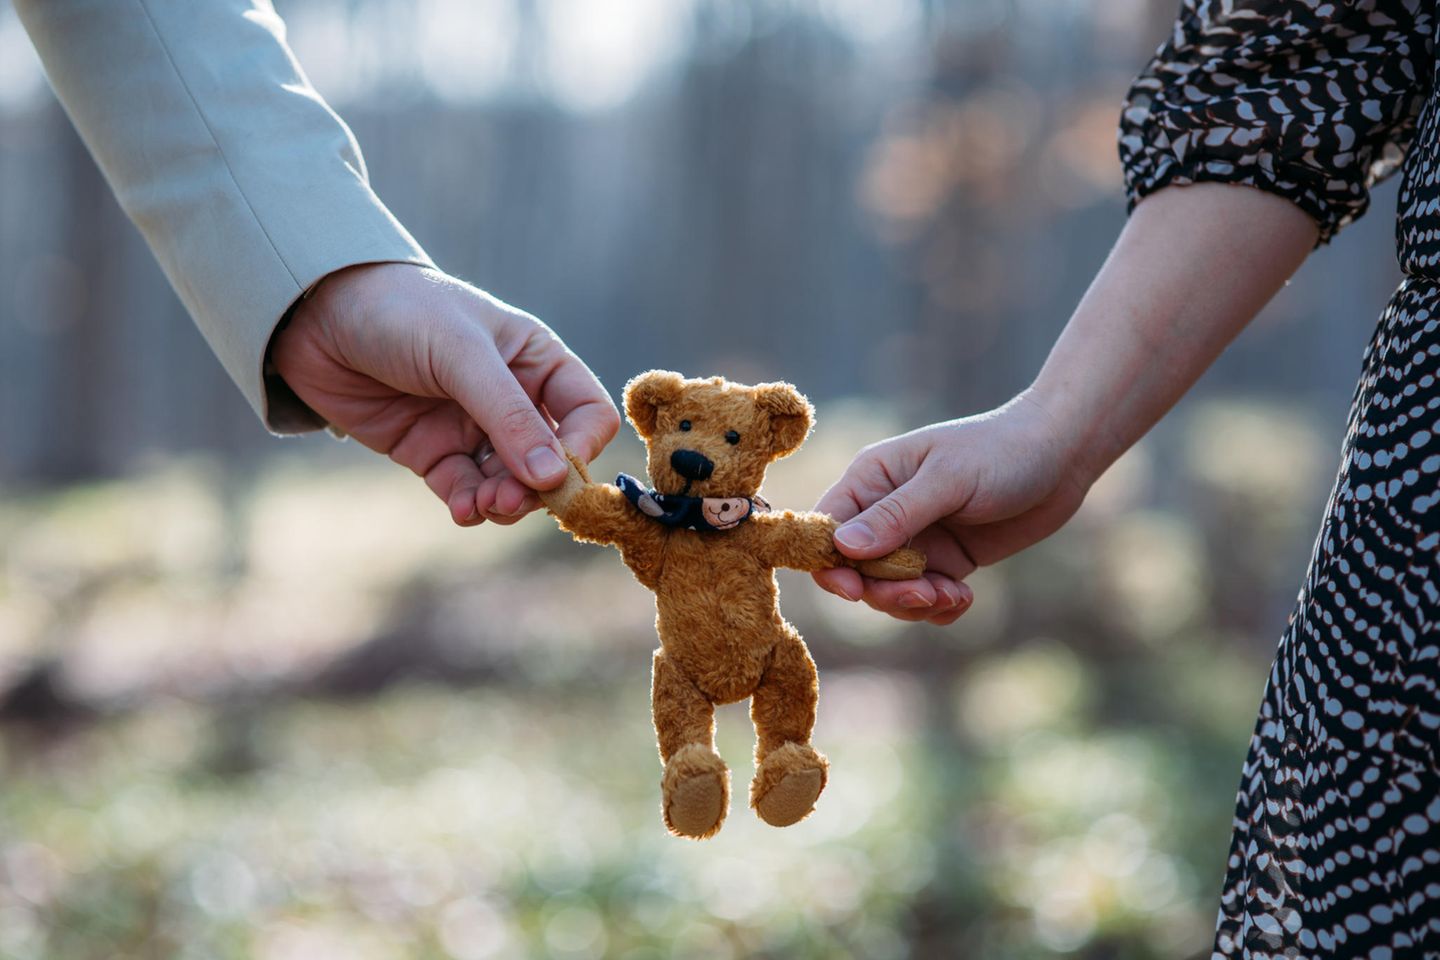 Paar wartet auf Baby ohne Sex: Teddybär in der Hand